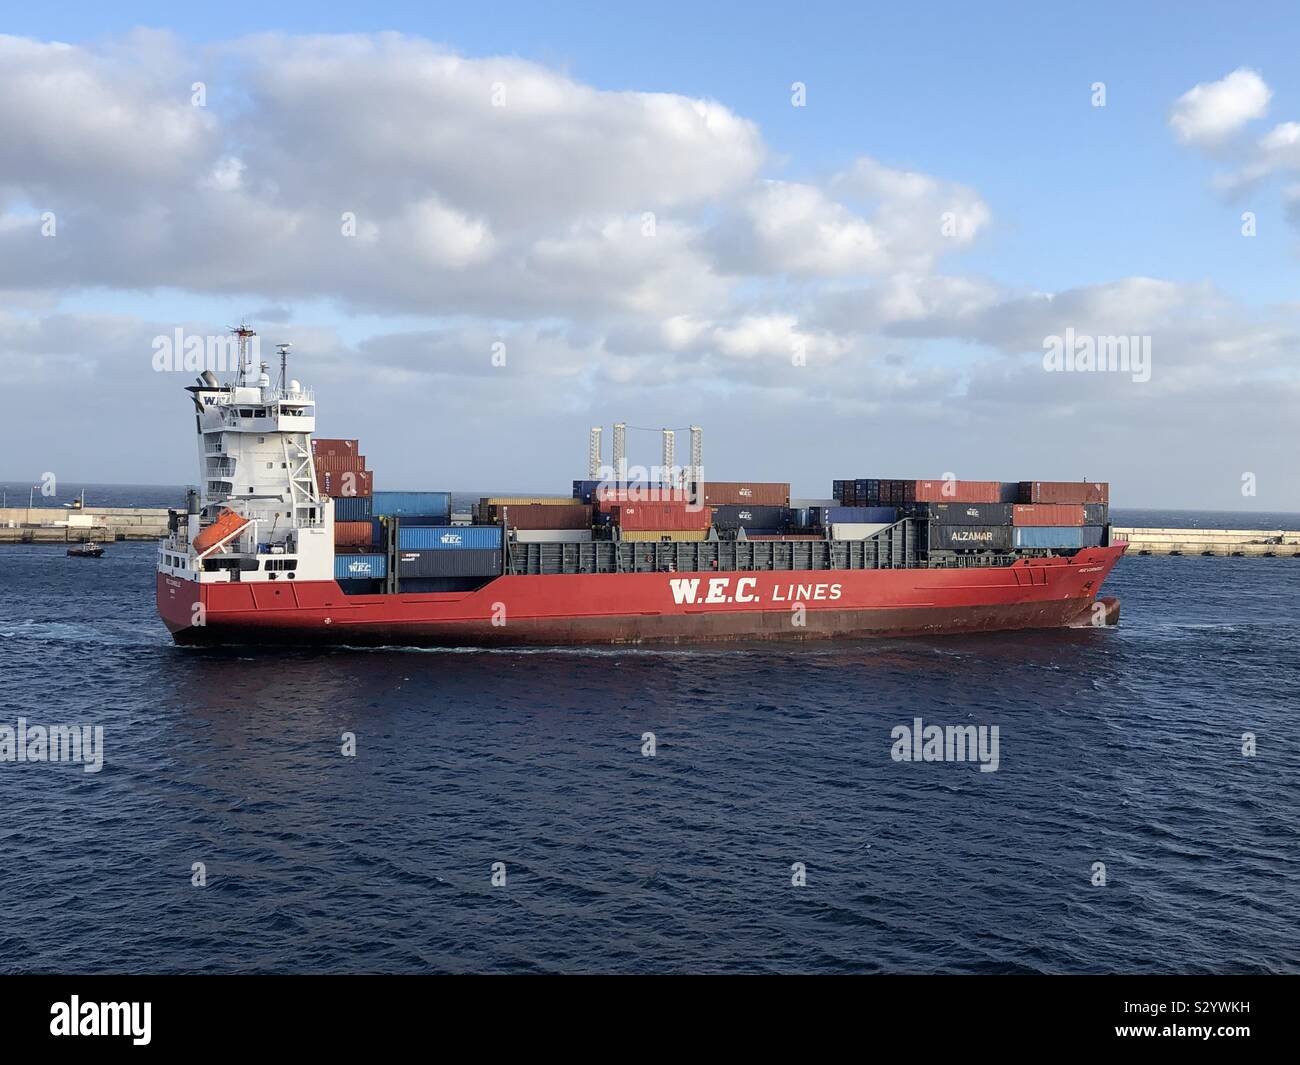 Arrecife/Lanzarote, 08.11.2019: Frachtschiff WEC Corneille der W.E.C. Linee beim Einlaufen in den Hafen von Arrecife Foto Stock